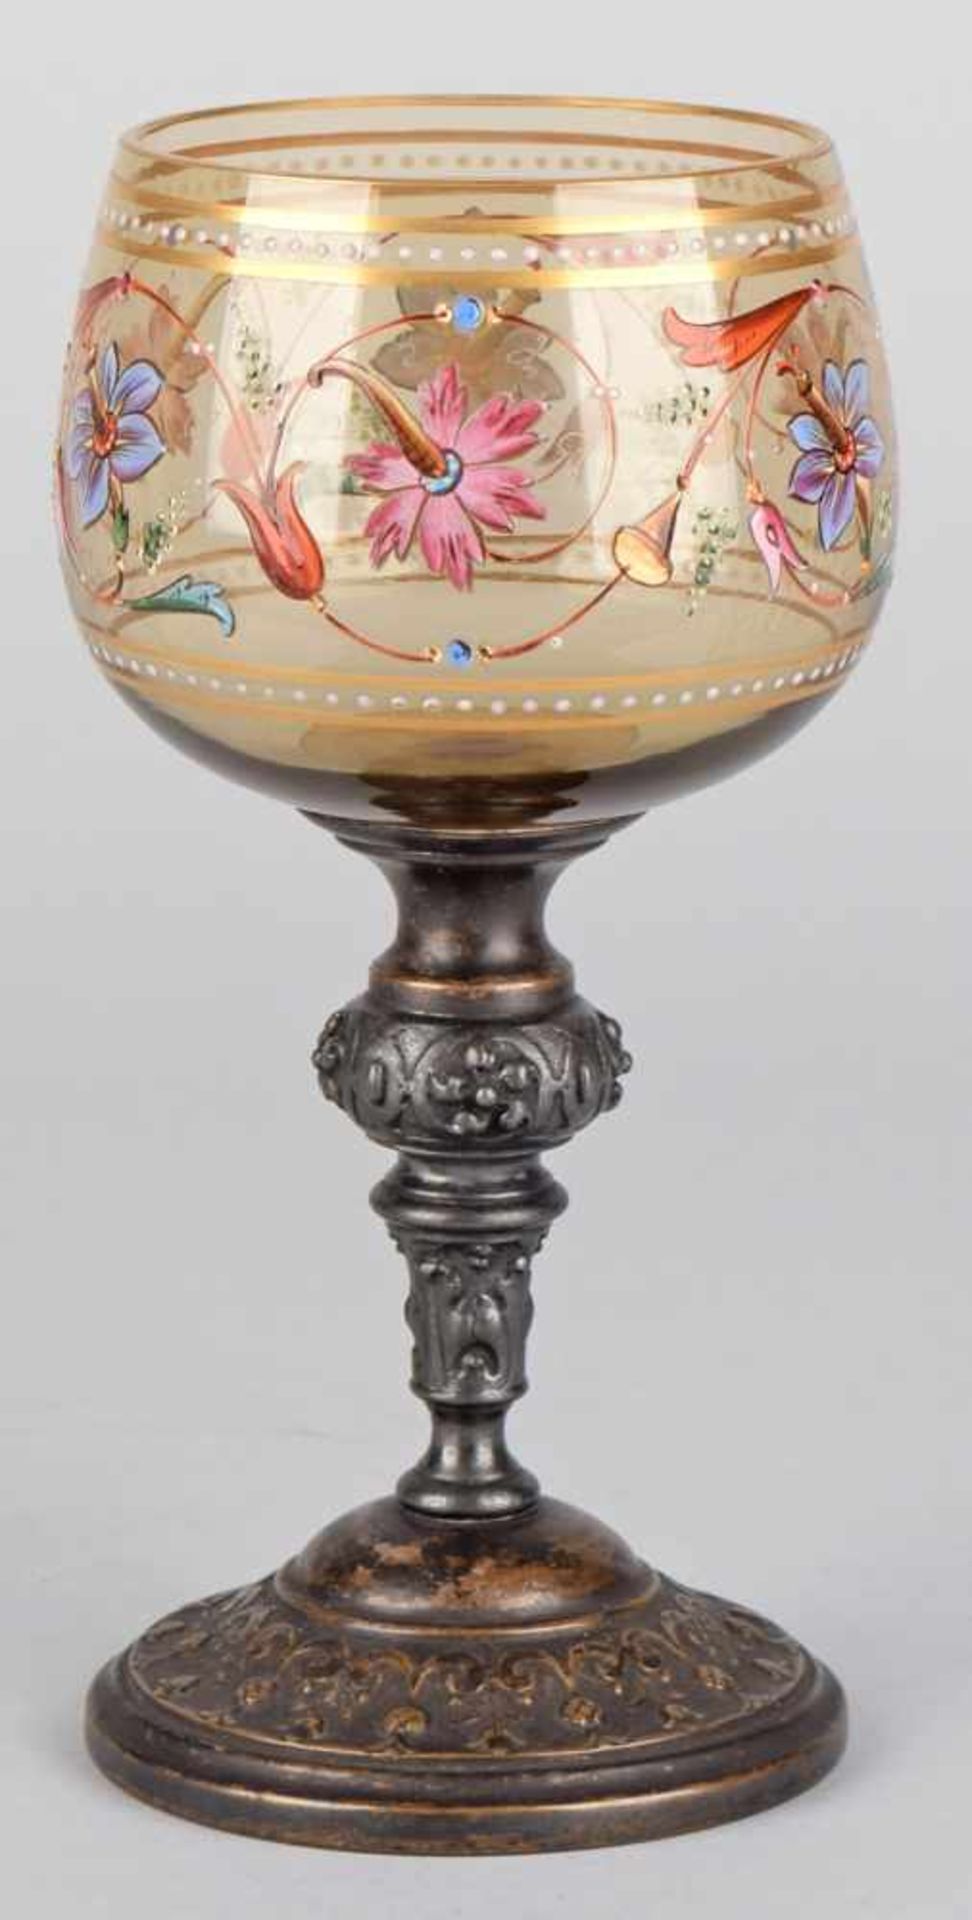 Historismus-Zierglas Stielglas mit kugeliger Kuppa in Braun-Grün, Blütenranke aufwendig von Hand - Image 2 of 2